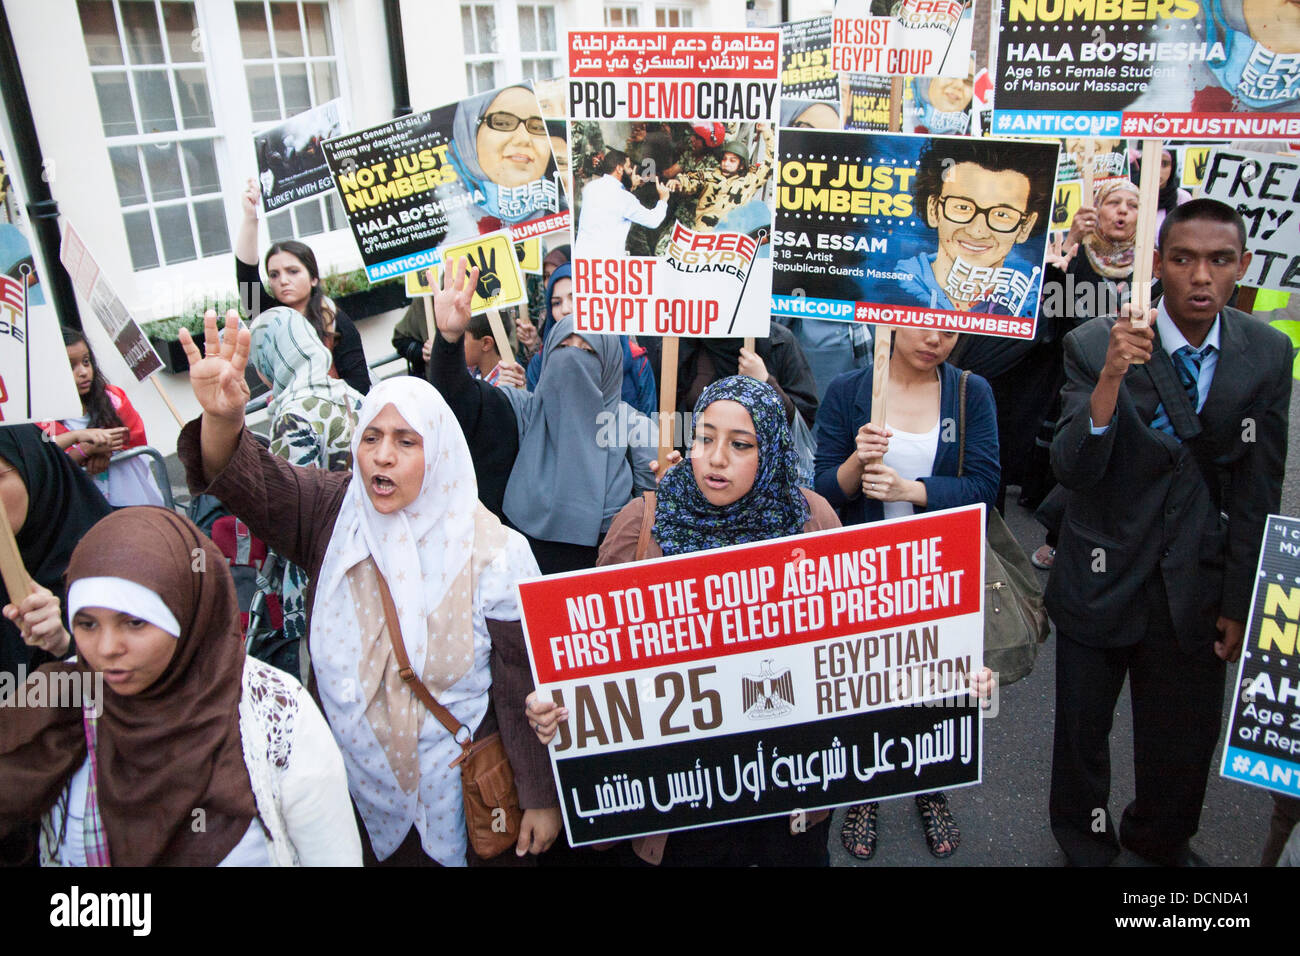 Londres, 20-08-2013. l'extérieur de l'ambassade d'Egypte dans le cadre des manifestations contre l'occupation militaire de l'ancien président Morsi, élu démocratiquement. Banque D'Images